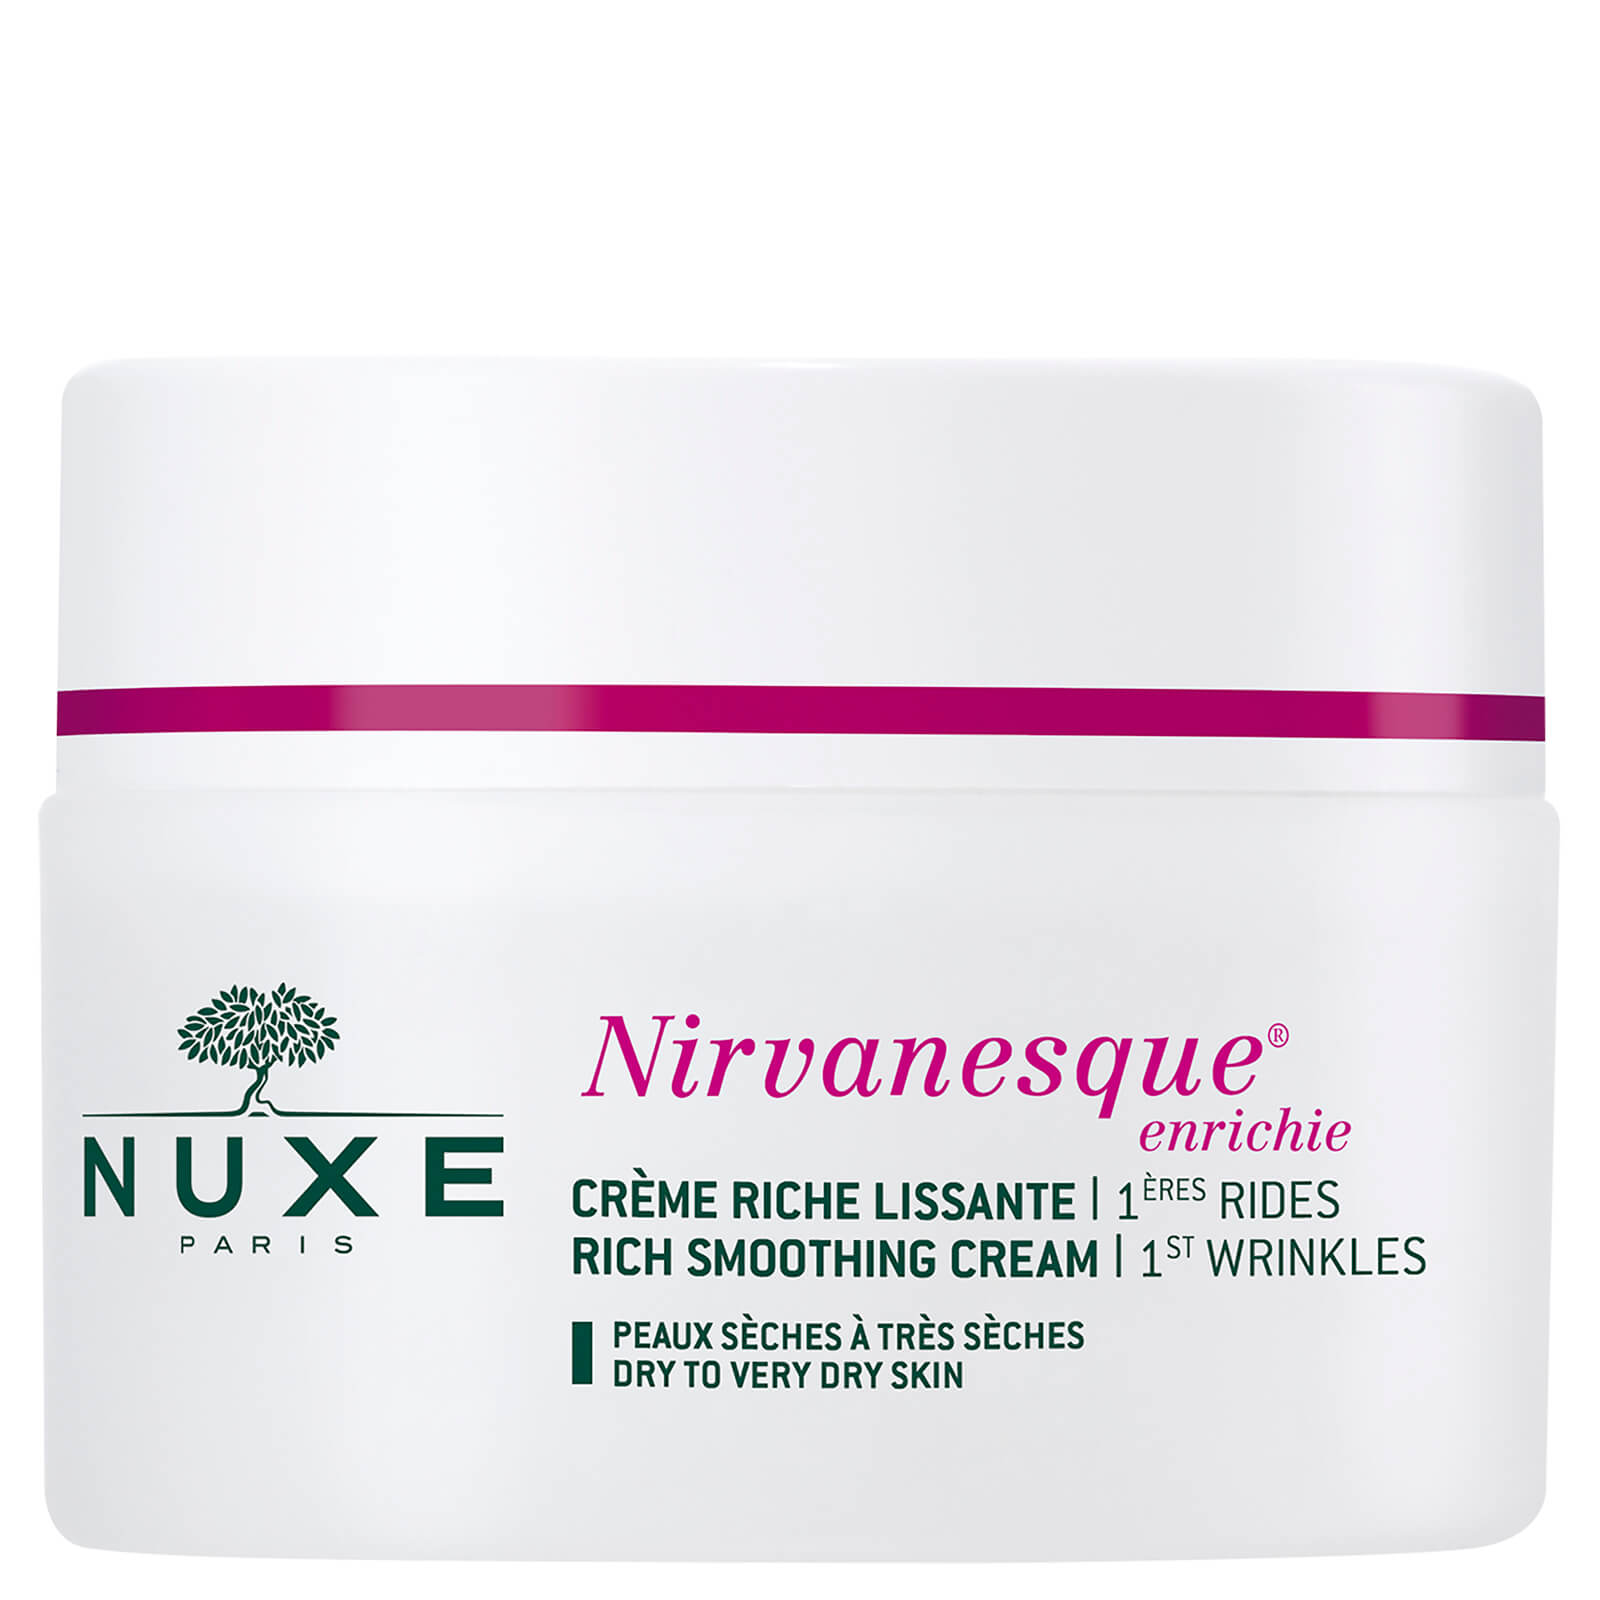 Crema NUXE Nirvanesque – piel seca (50ml)